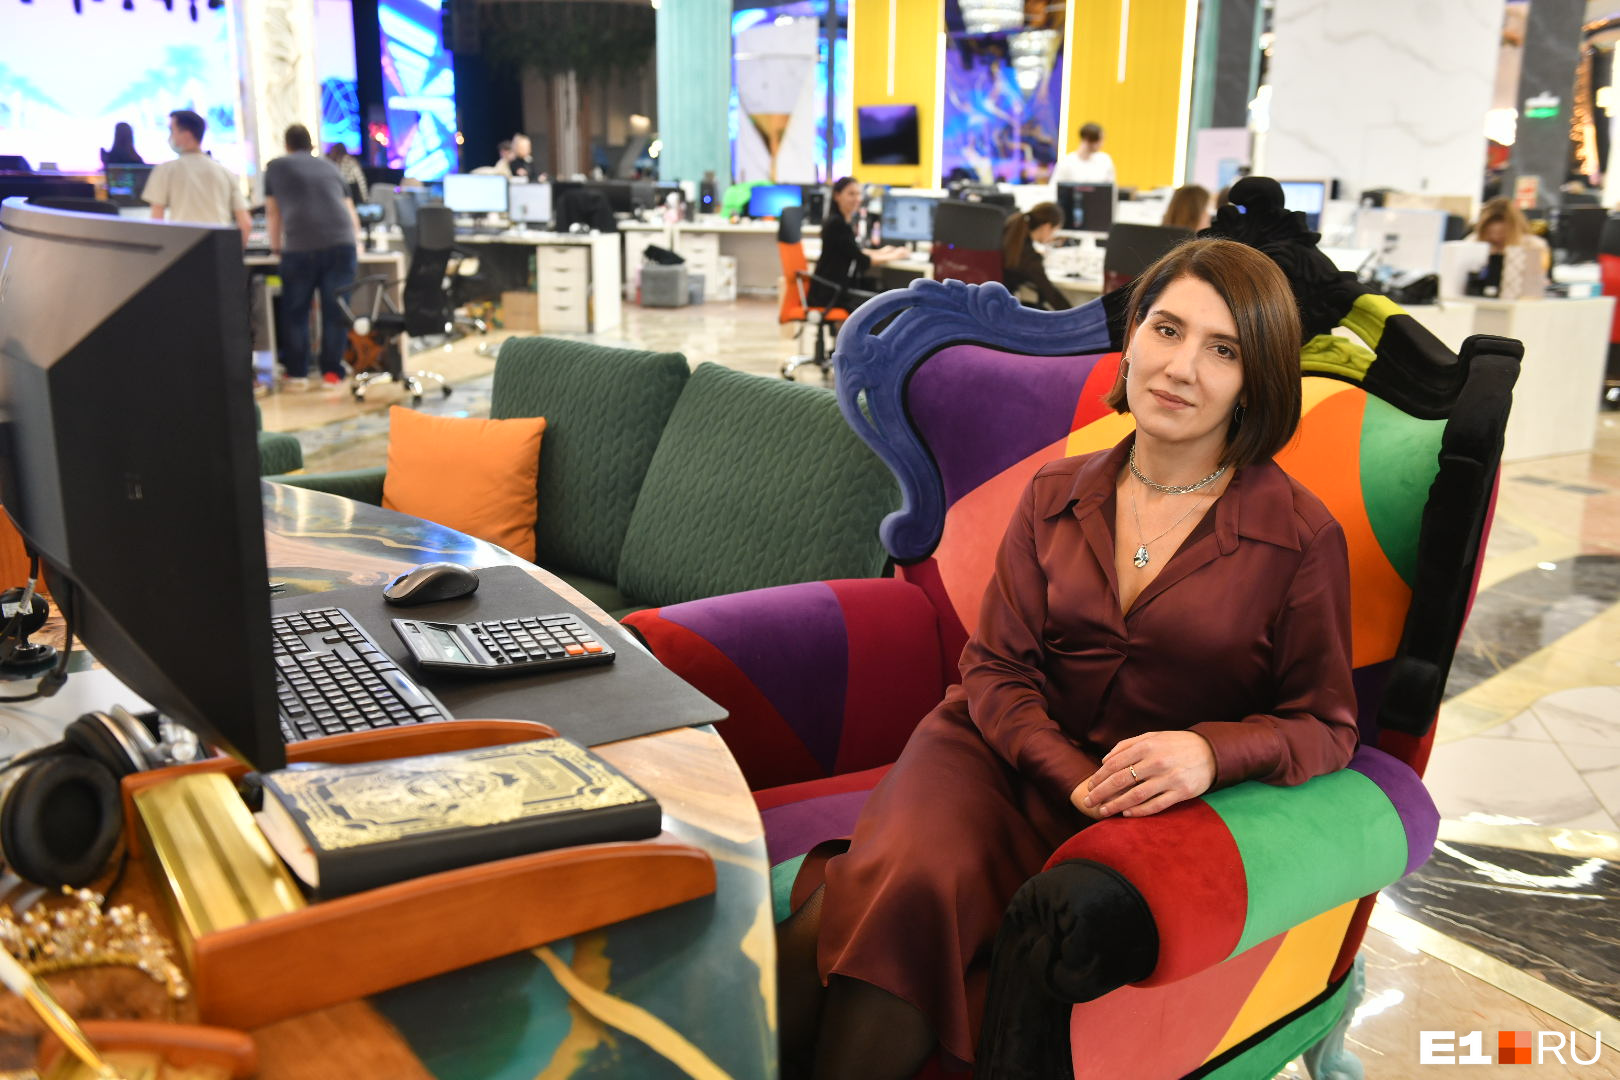 Руководитель отдела Ирина Пахарь сидит в центре большого зала